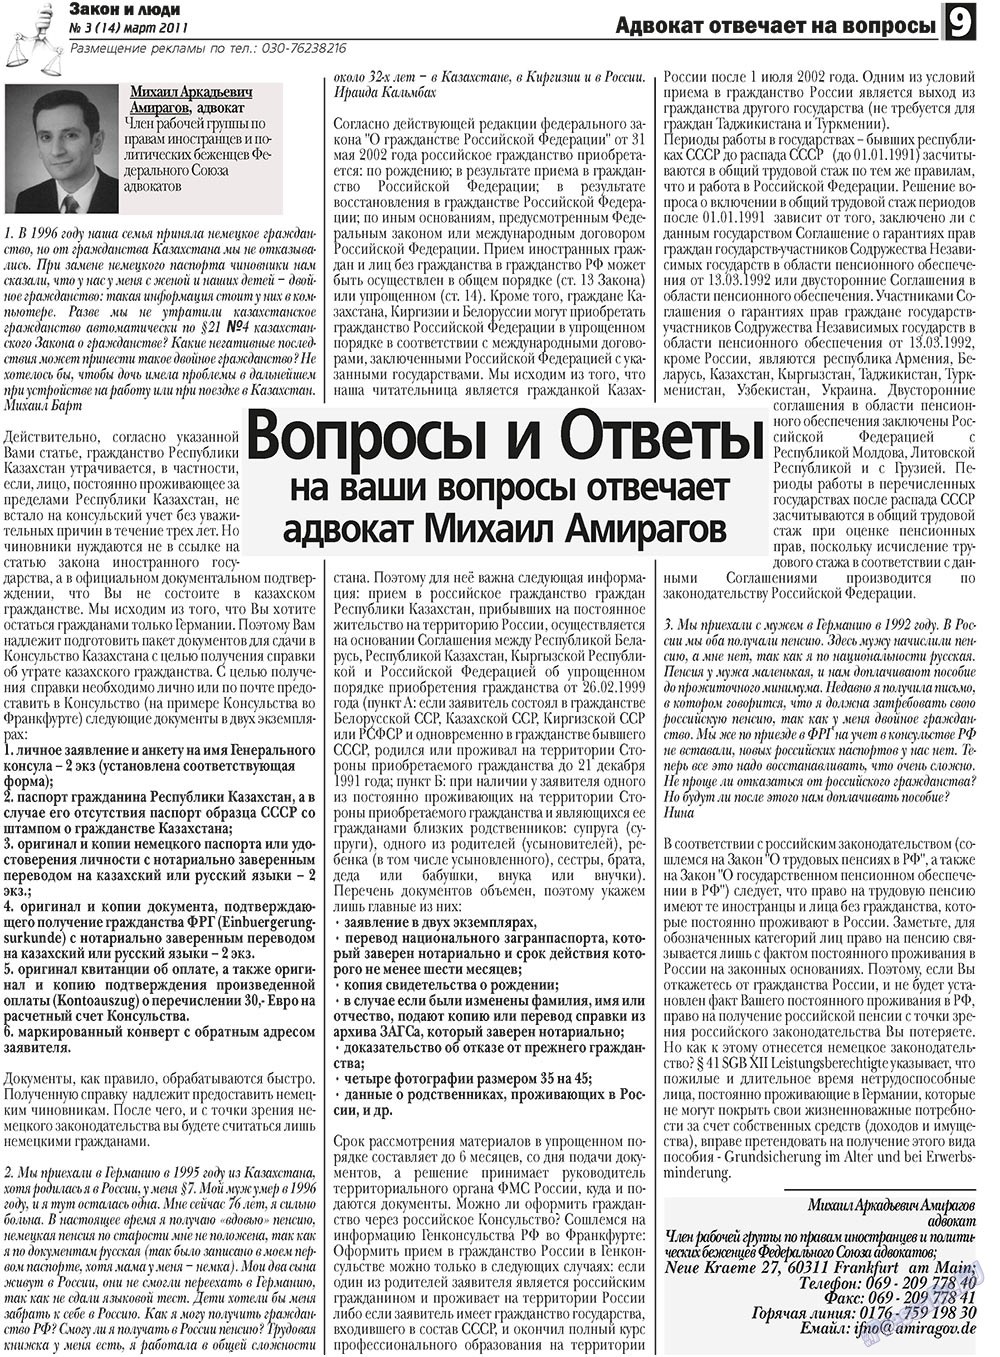 Закон и люди, газета. 2011 №3 стр.9